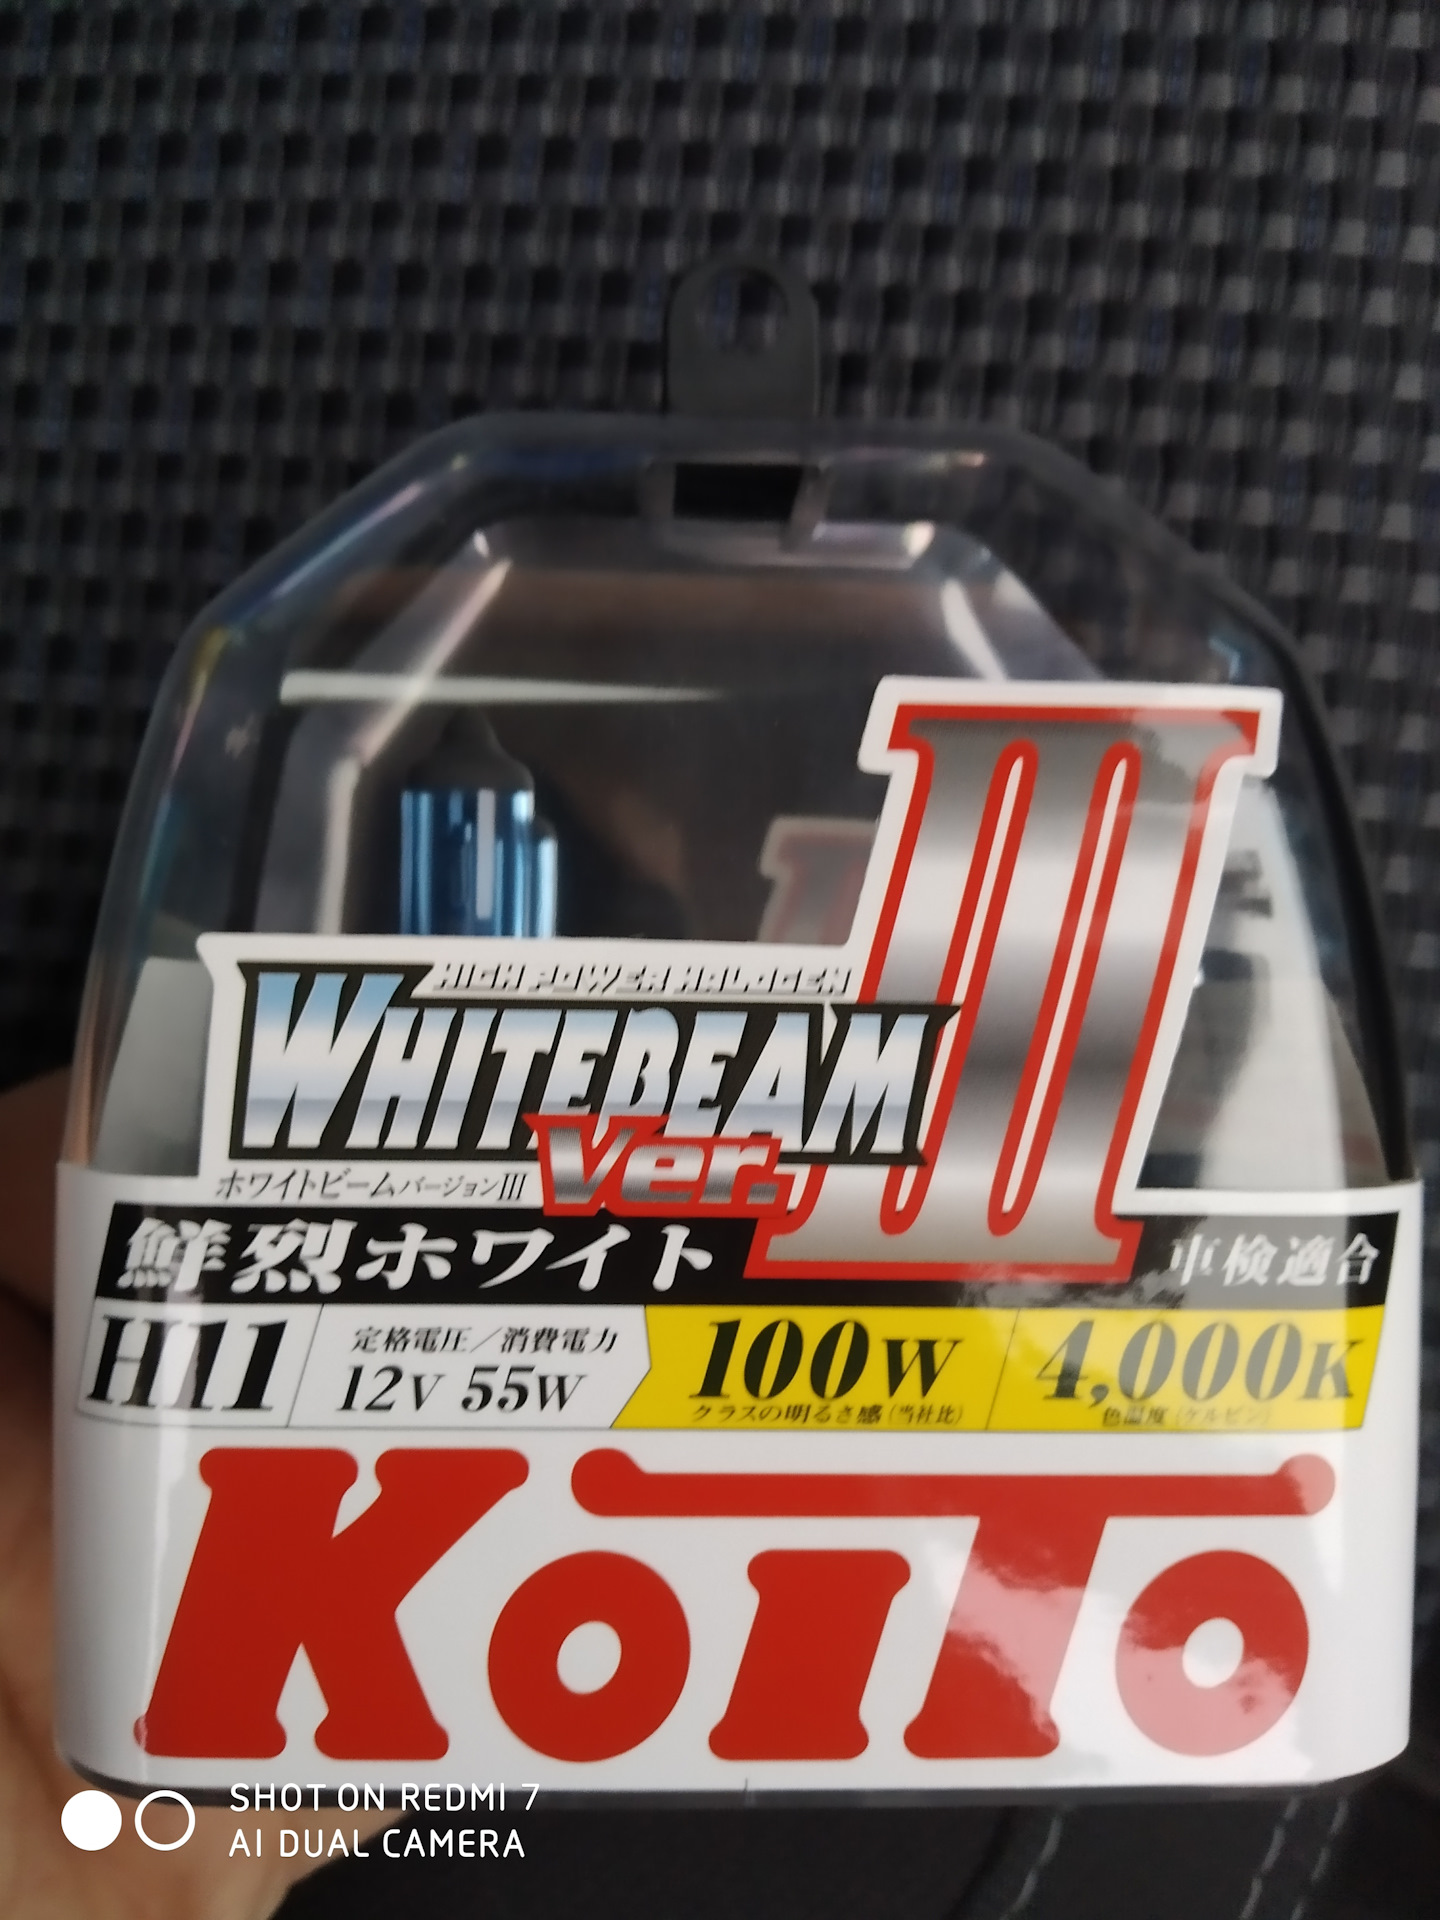 Koito Whitebeam drive2. Koito whitebeam 12v 55w